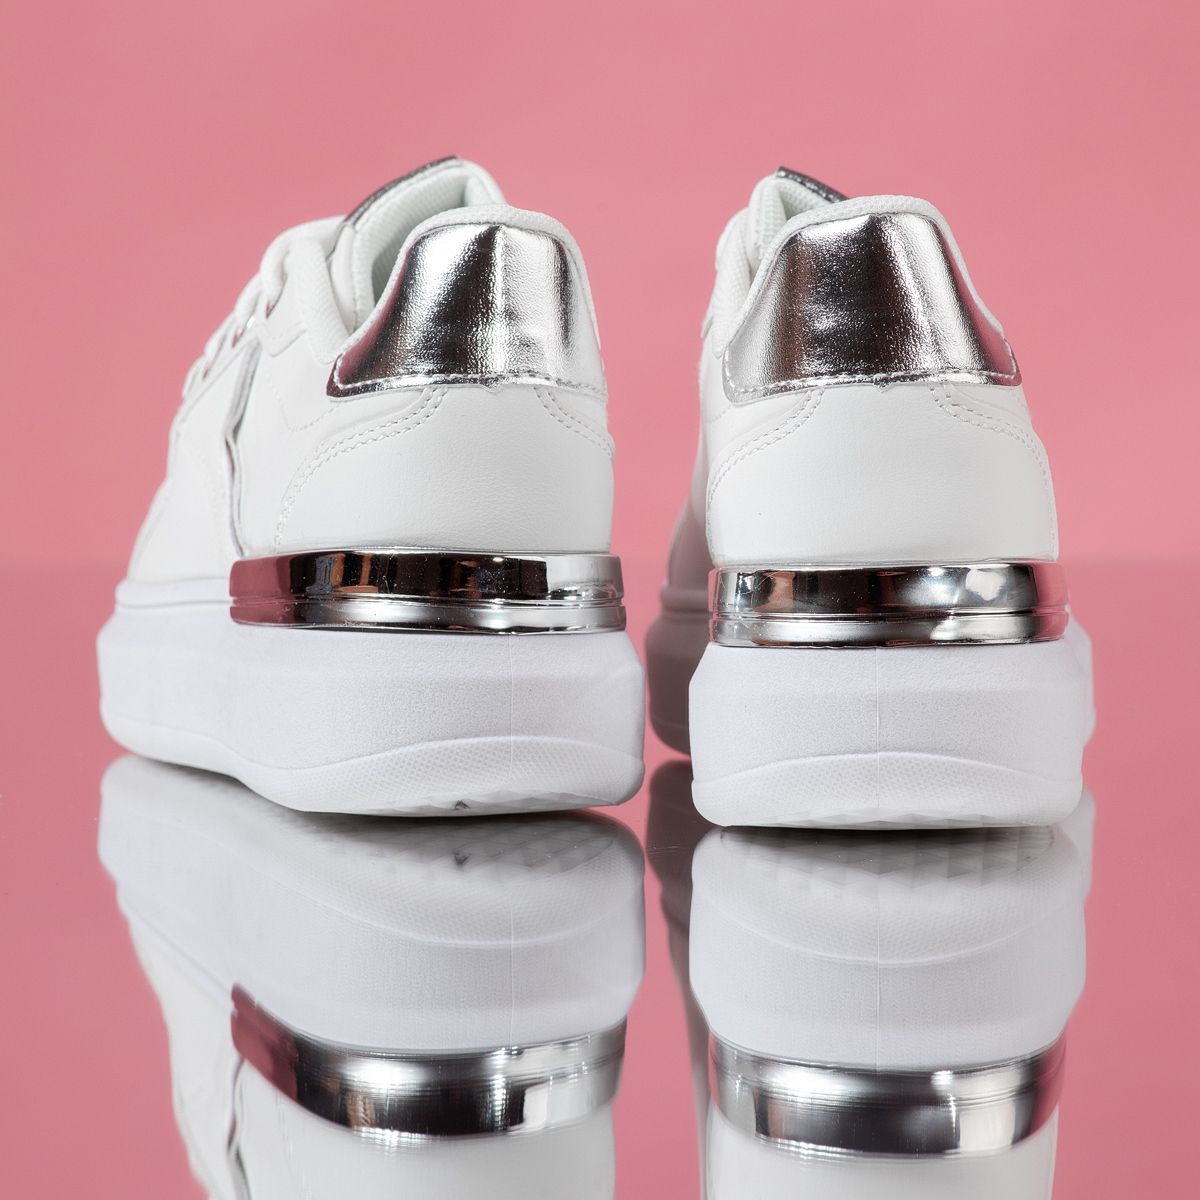 Adidasi Copii Hazel Albi/Argintii #16250